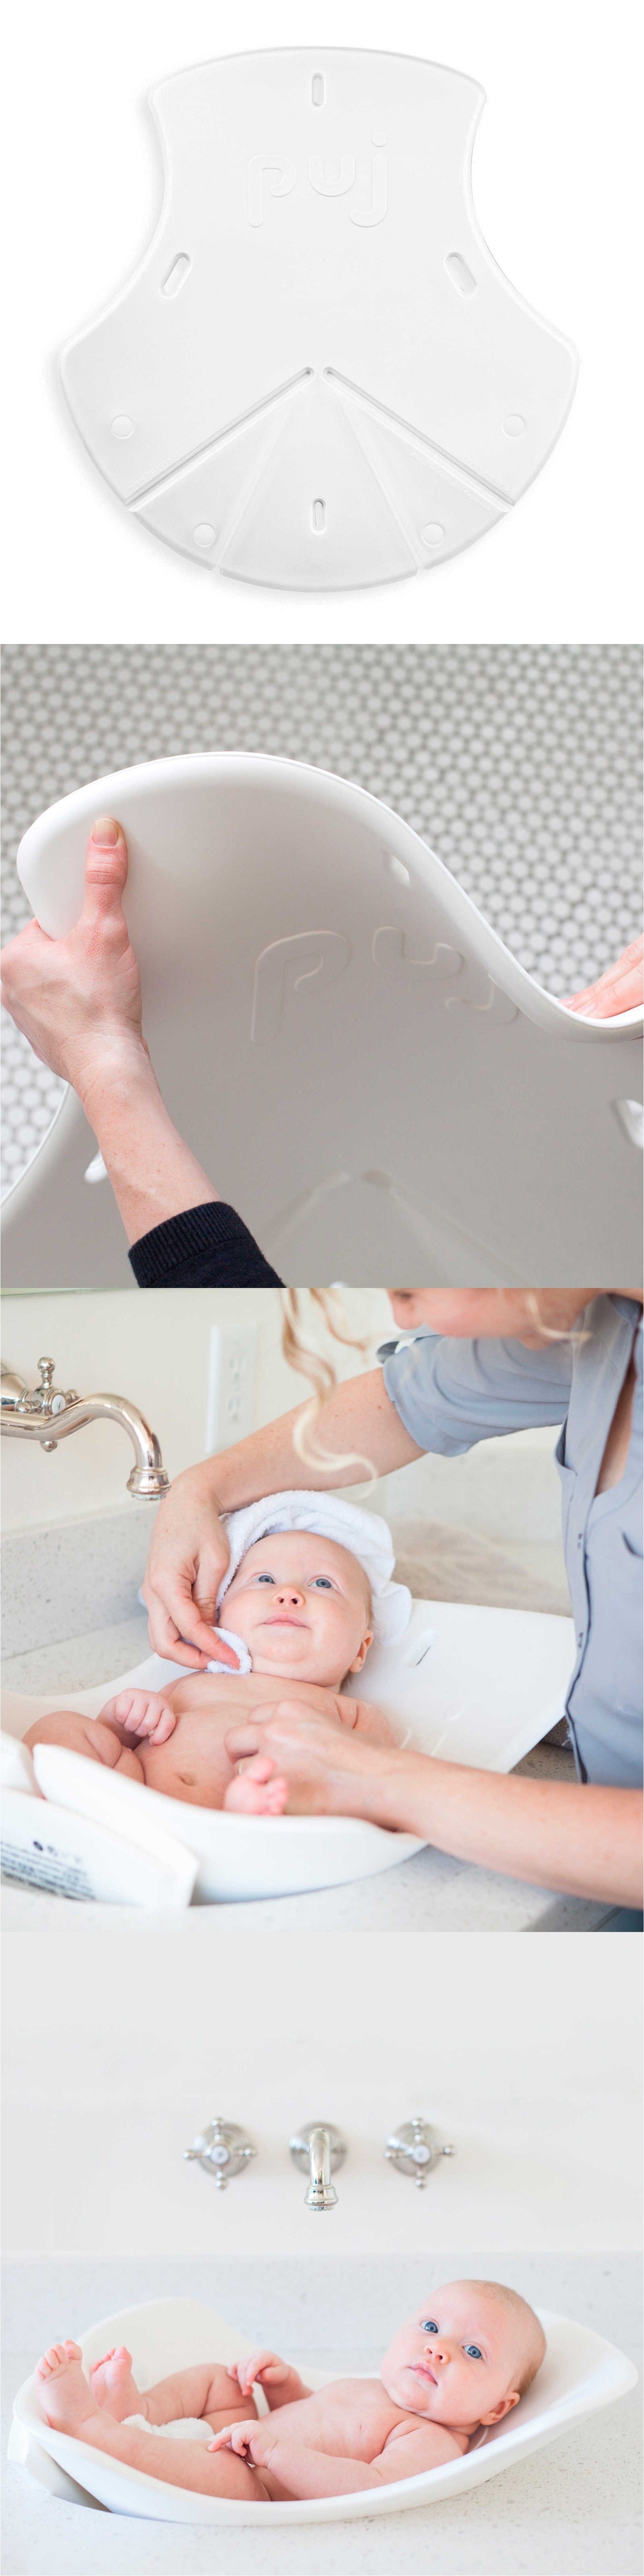 bath tubs infant bath tub puj tub soft foldable baby bather for bathroom sinks